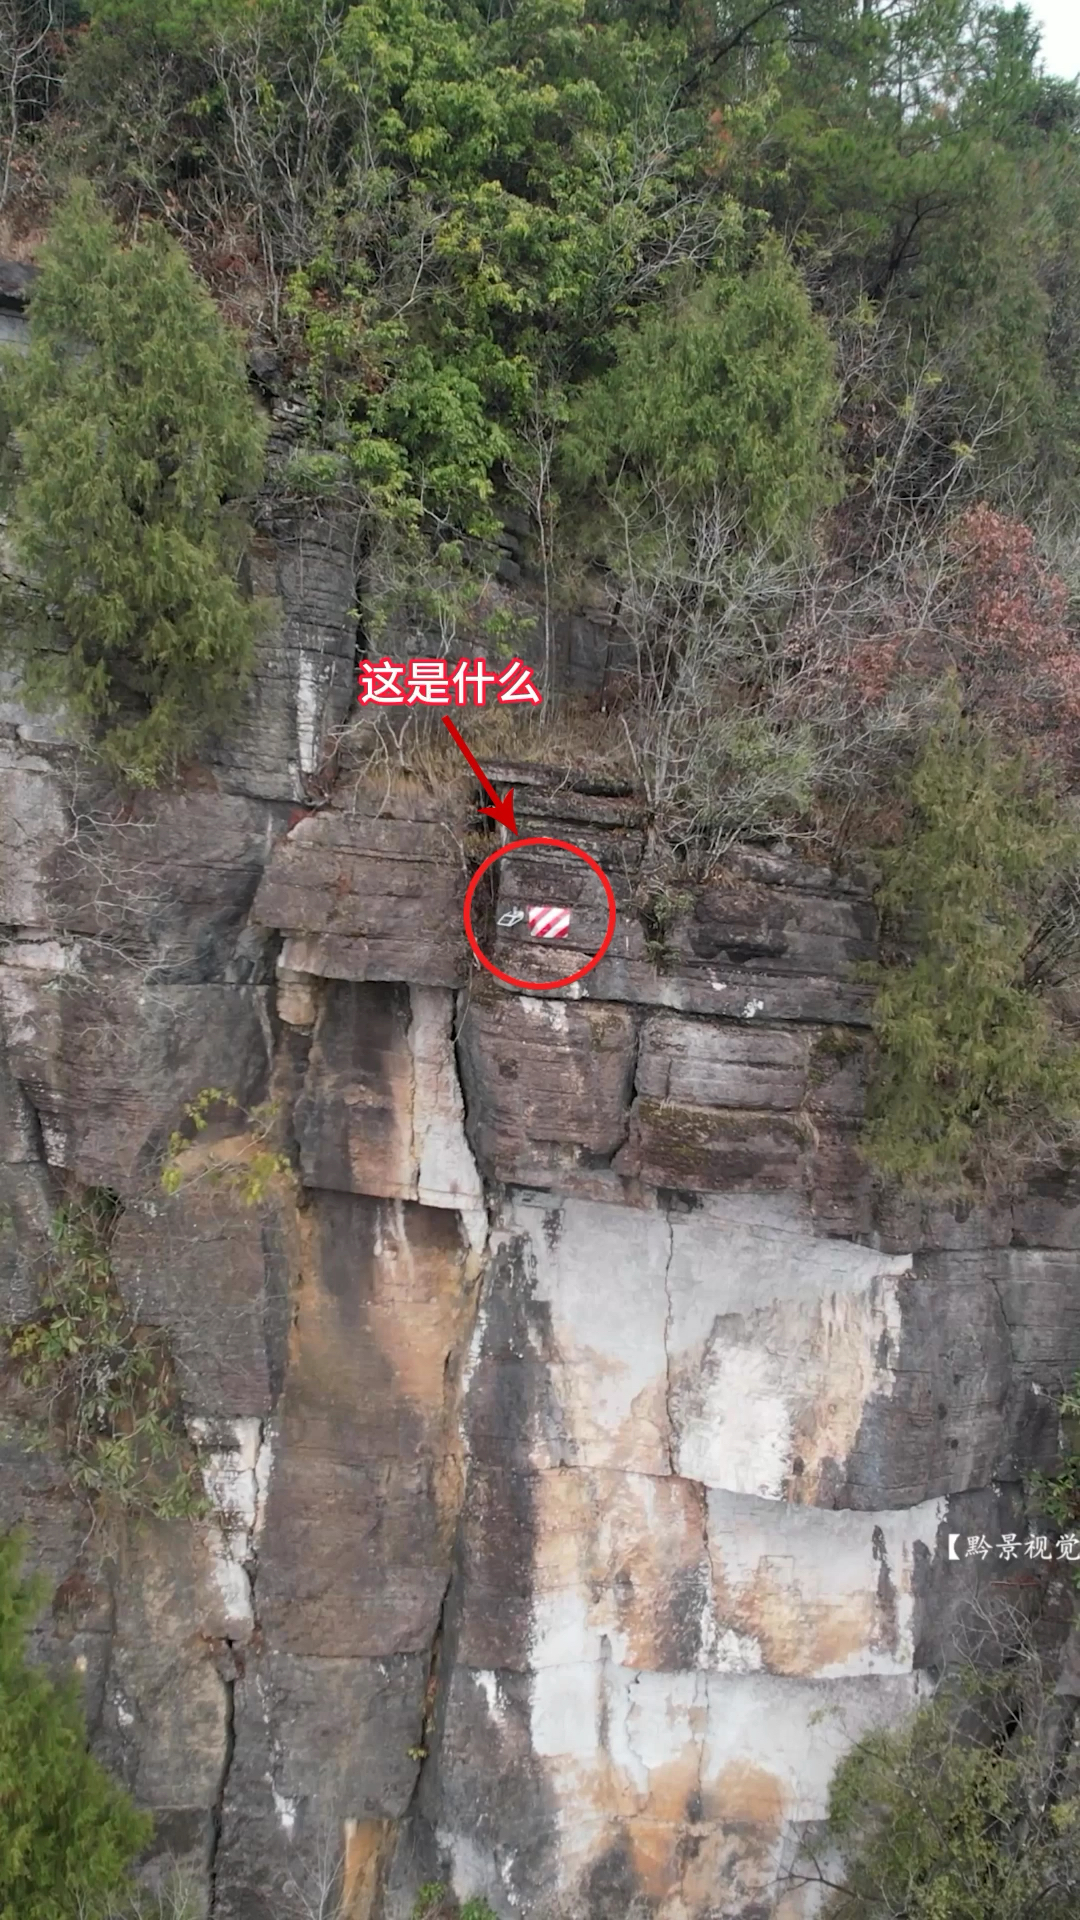 无人机在贵州深山拍到神秘装置，位于海拔千米的悬崖峭壁之上，这里没有路可以上去是怎么安装的？究竟如何用